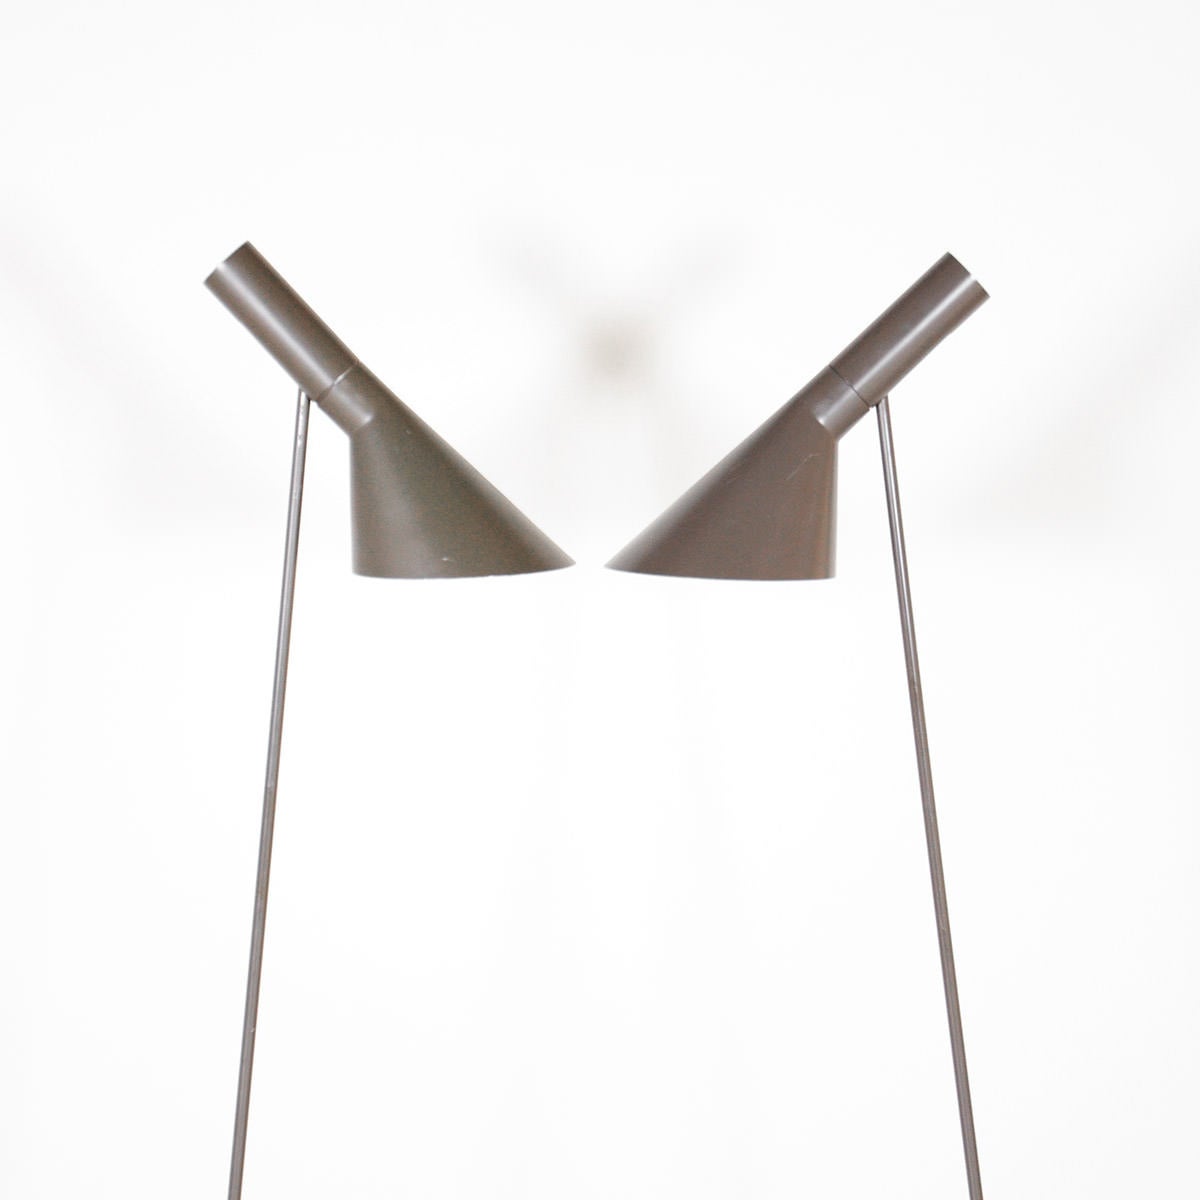 Danish Floor Lamps by Arne Jacobsen